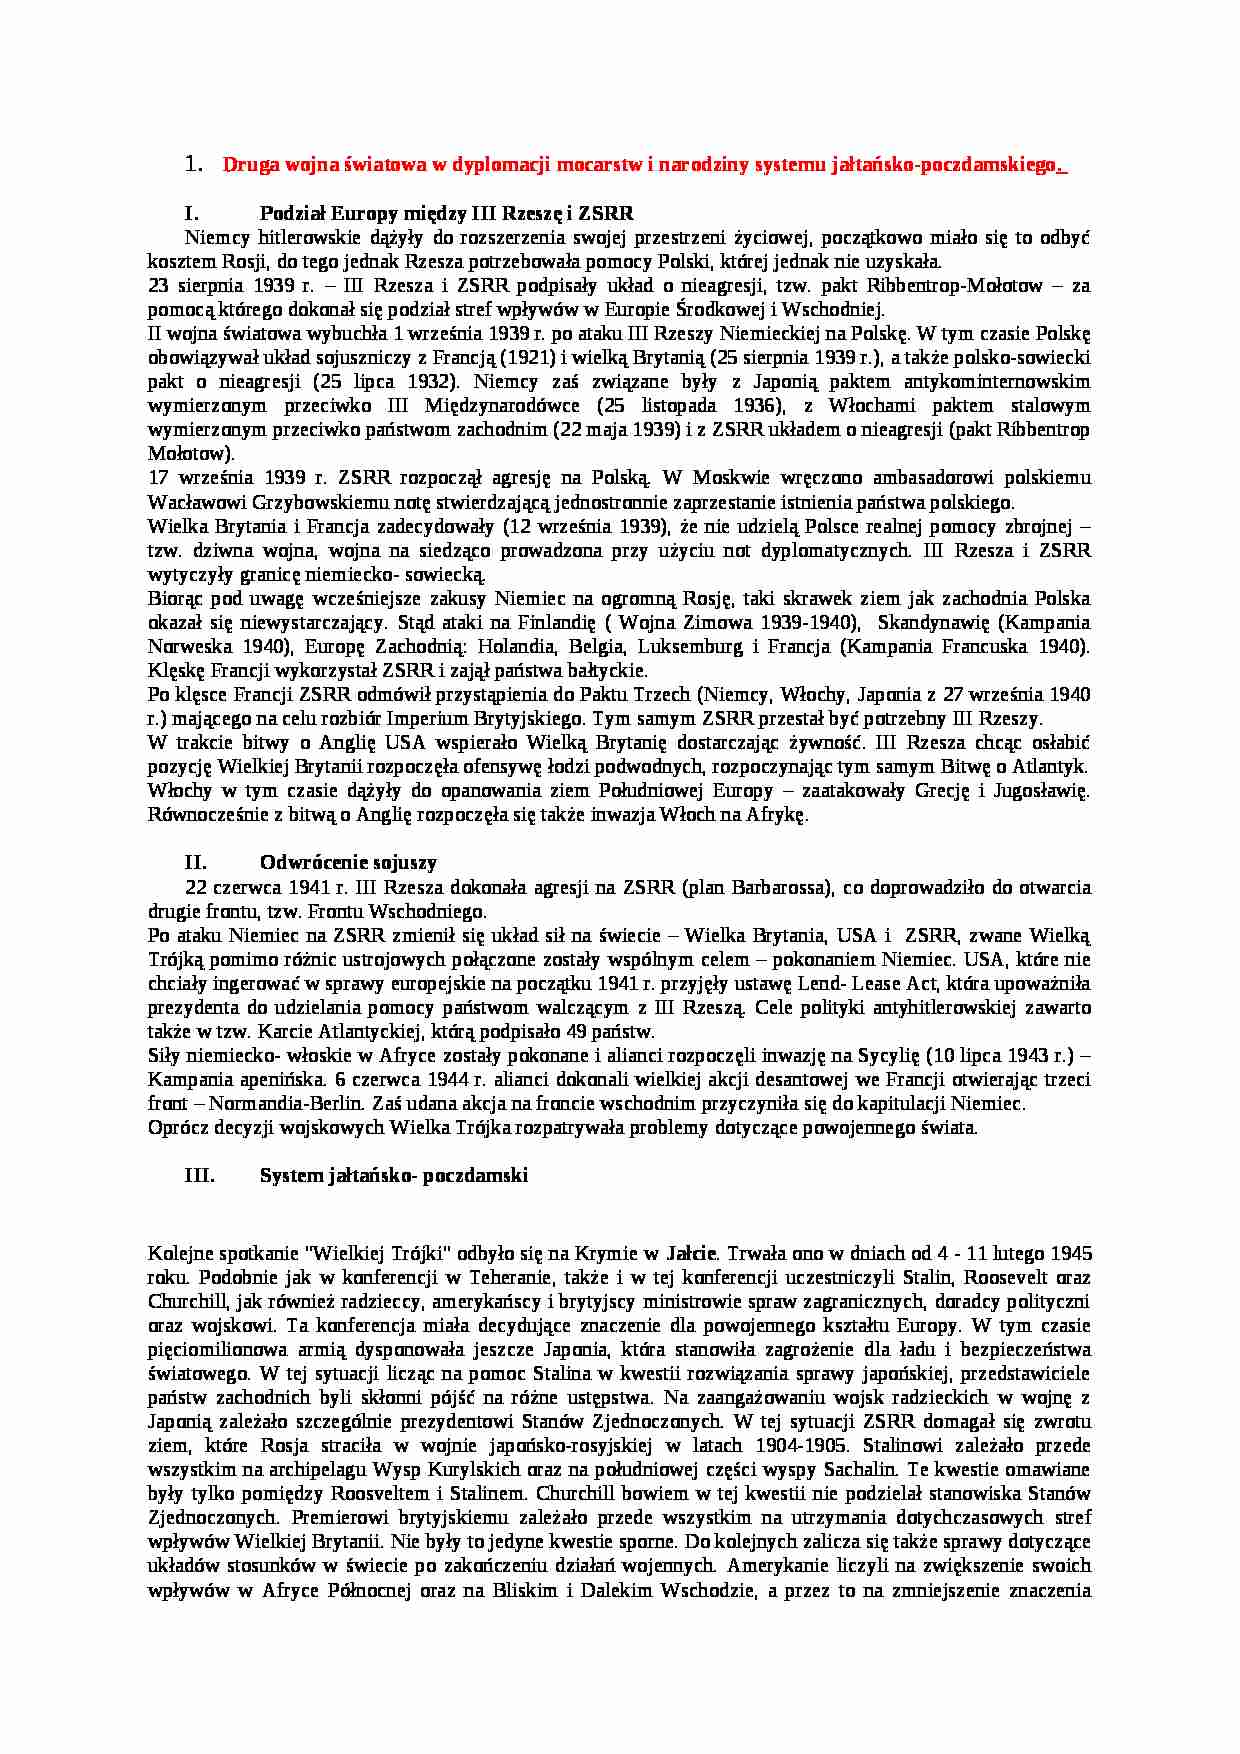  Druga wojna światowa w dyplomacji mocarstw i narodziny systemu jałtańsko-poczdamskiego - strona 1